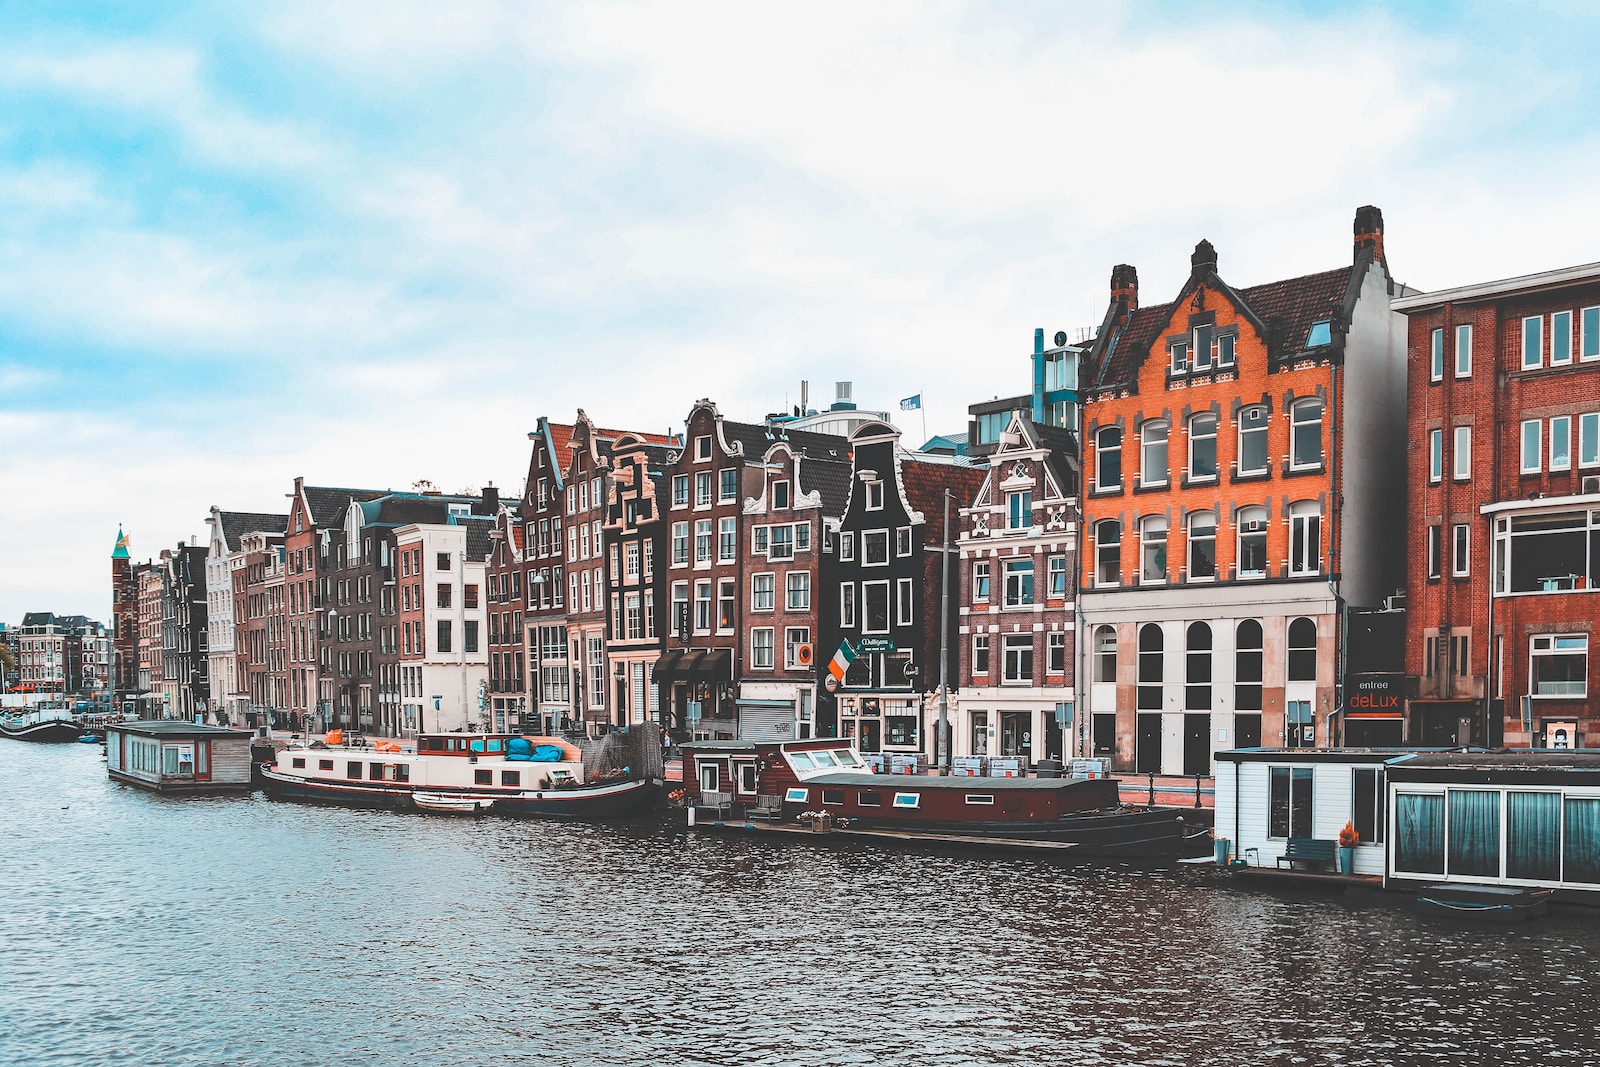 Découvrez les meilleures destinations gay-friendly aux Pays-Bas avec GuysRoadTrip ! Trouvez des conseils de voyage LGBTQ+ pour Amsterdam, Rotterdam et bien d'autres villes. Vivez une expérience inoubliable dans un pays accueillant et ouvert d'esprit.